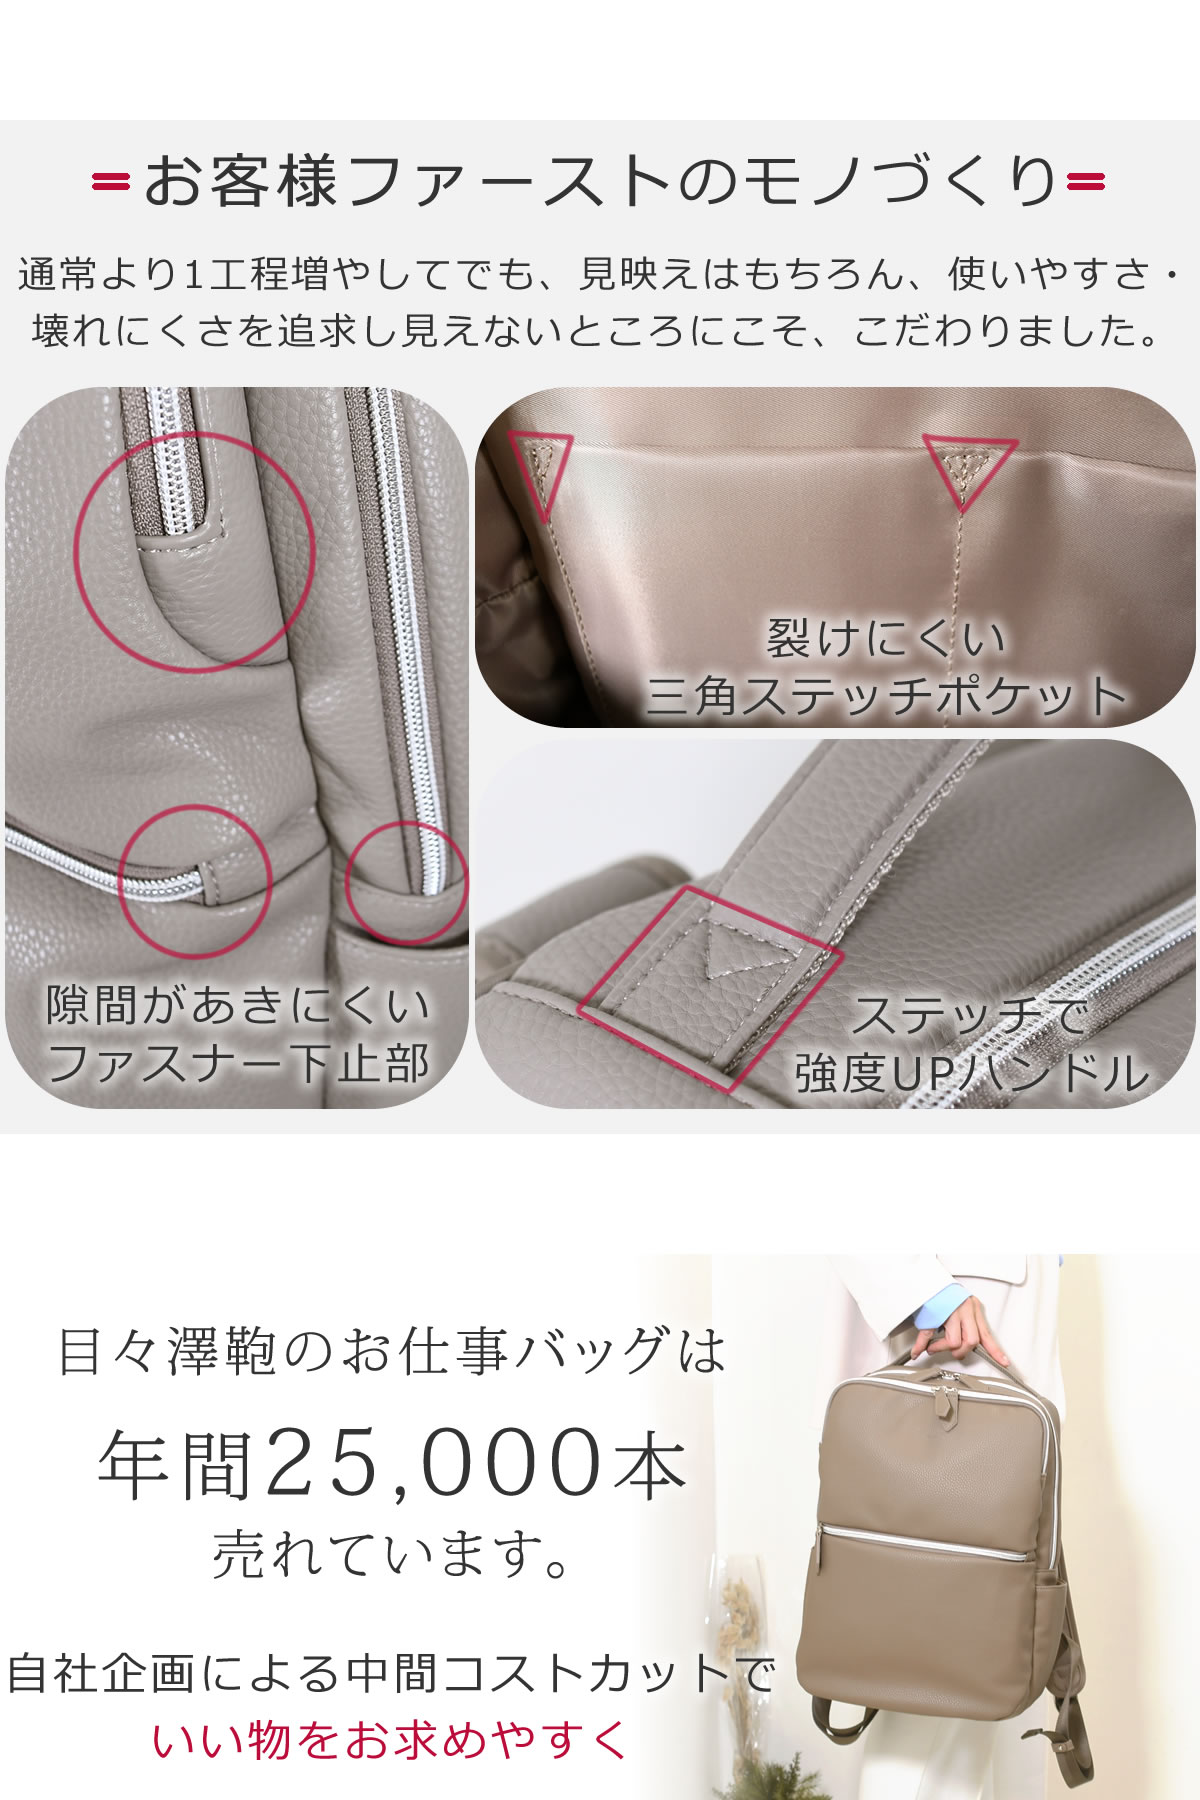 目々澤鞄オリジナル ビジネスリュック レディース お客様ファーストのモノ作り使いやすさ壊れにくさを追求